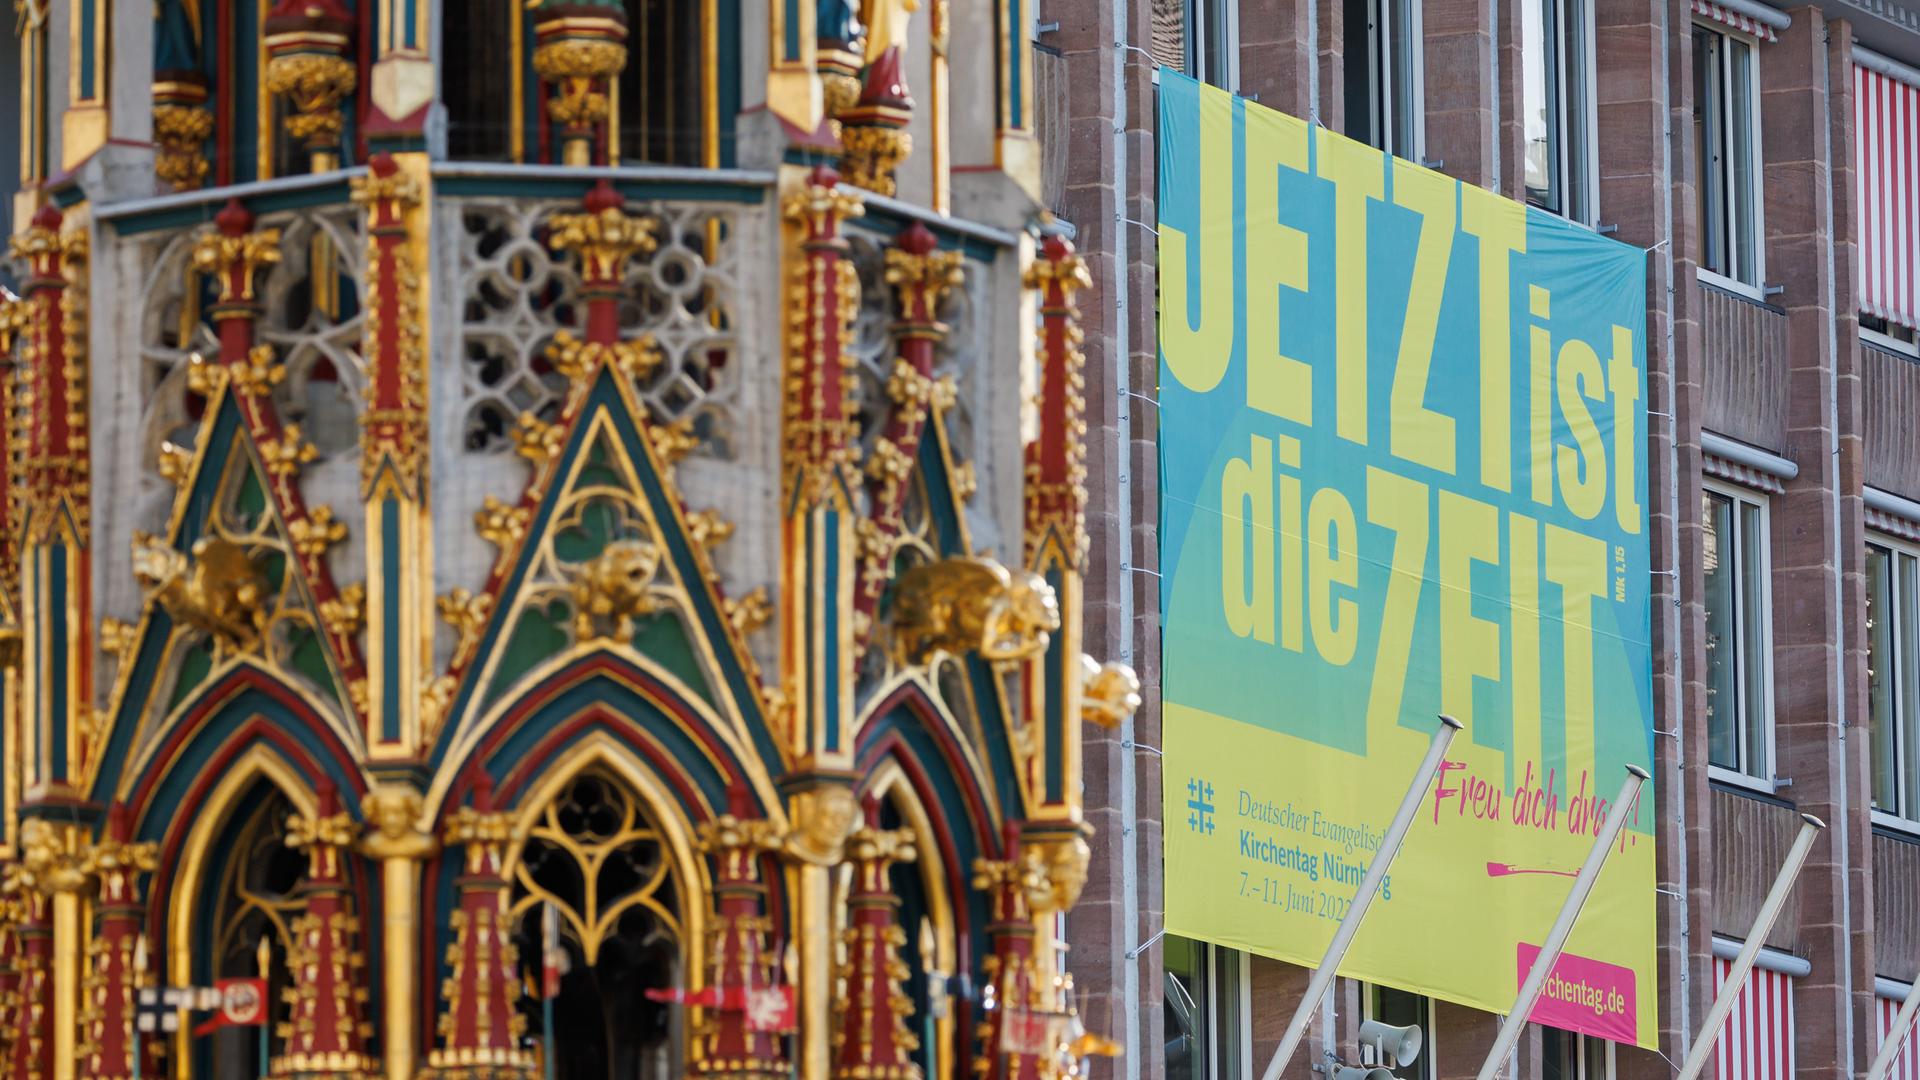 Ein Plakat zum Evangelischen Kirchentag mit dem Slogan "Jetzt ist die Zeit" hängt an der Außenfassade des Rathauses am Hauptmarkt in Nürnberg.